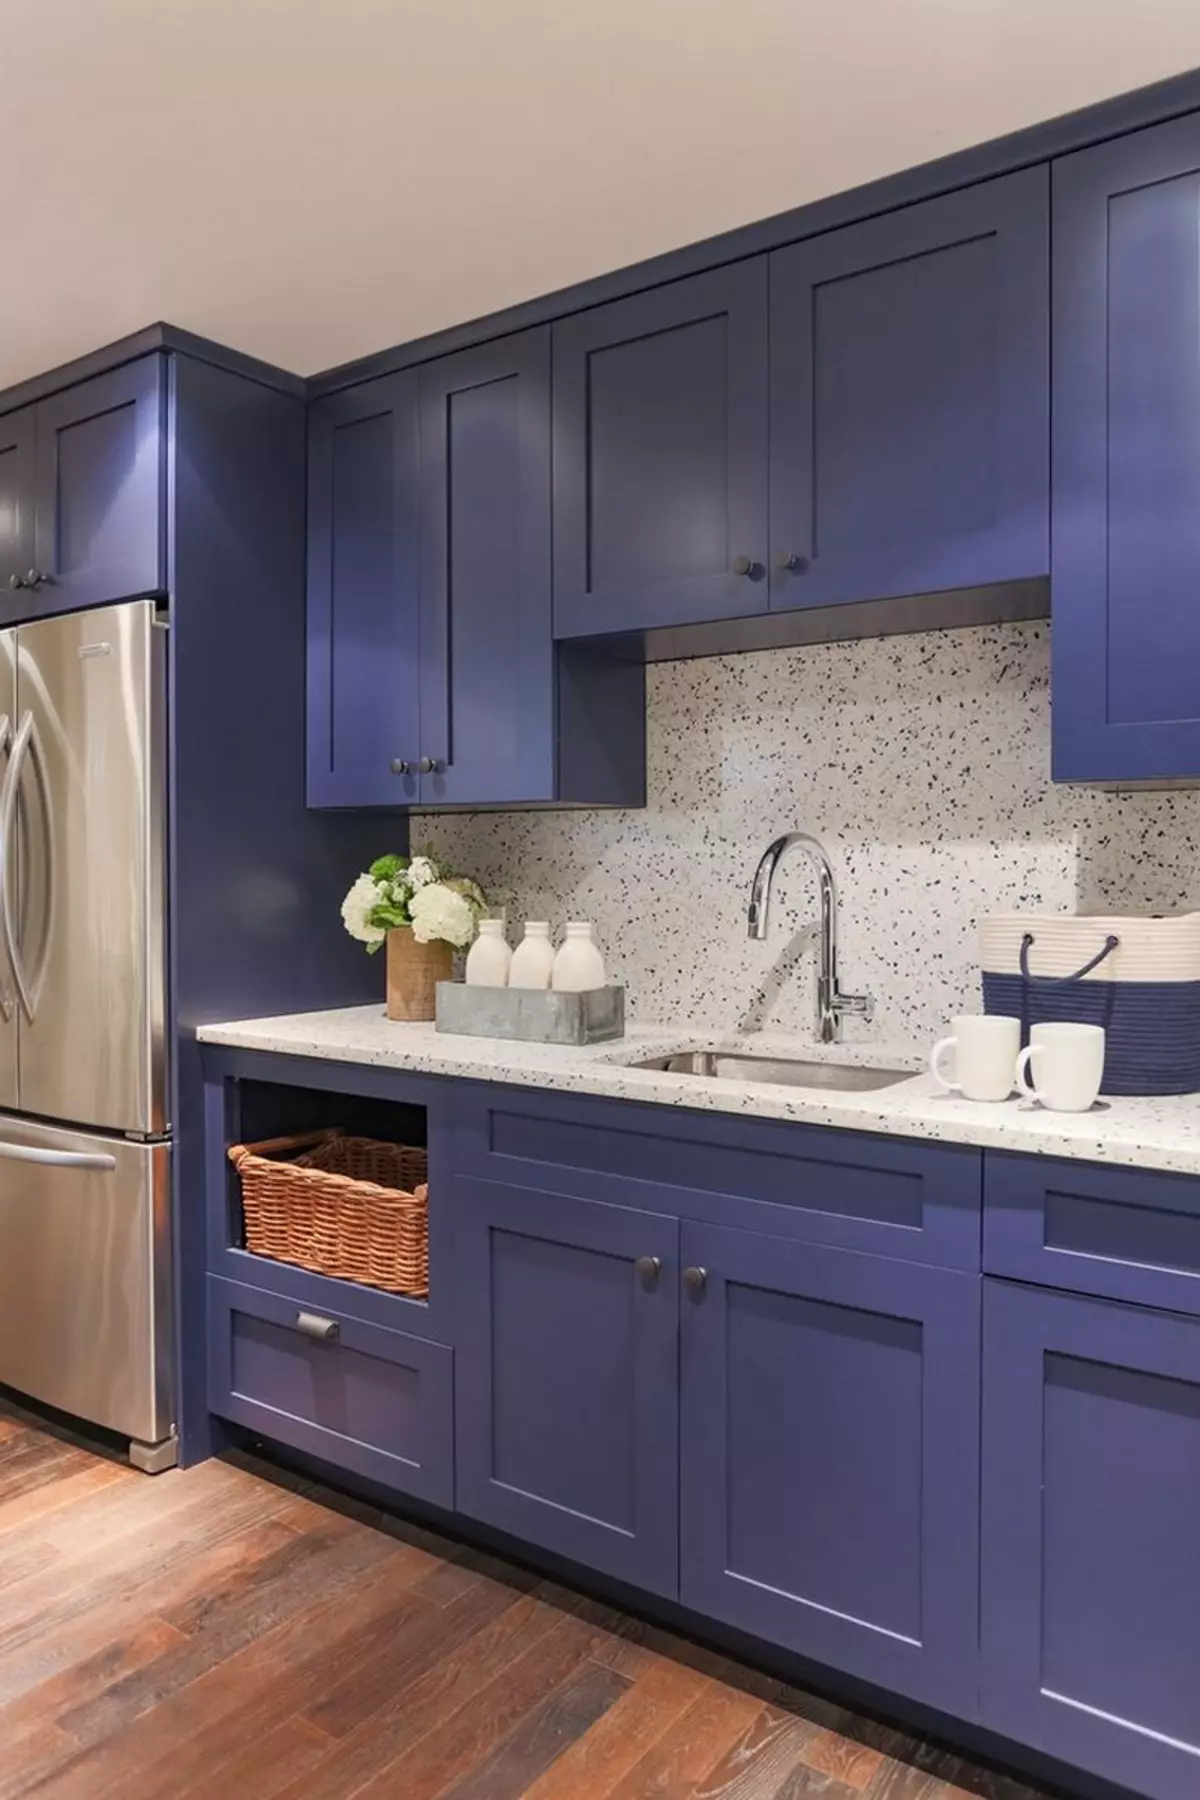 آشپزخانه آبی (82 عکس): چه رنگی در داخل یک آشپزخانه آبی ترکیب شده است؟ طراحی آشپزخانه در آبی رنگ آبی و آبی تیره 9555_11